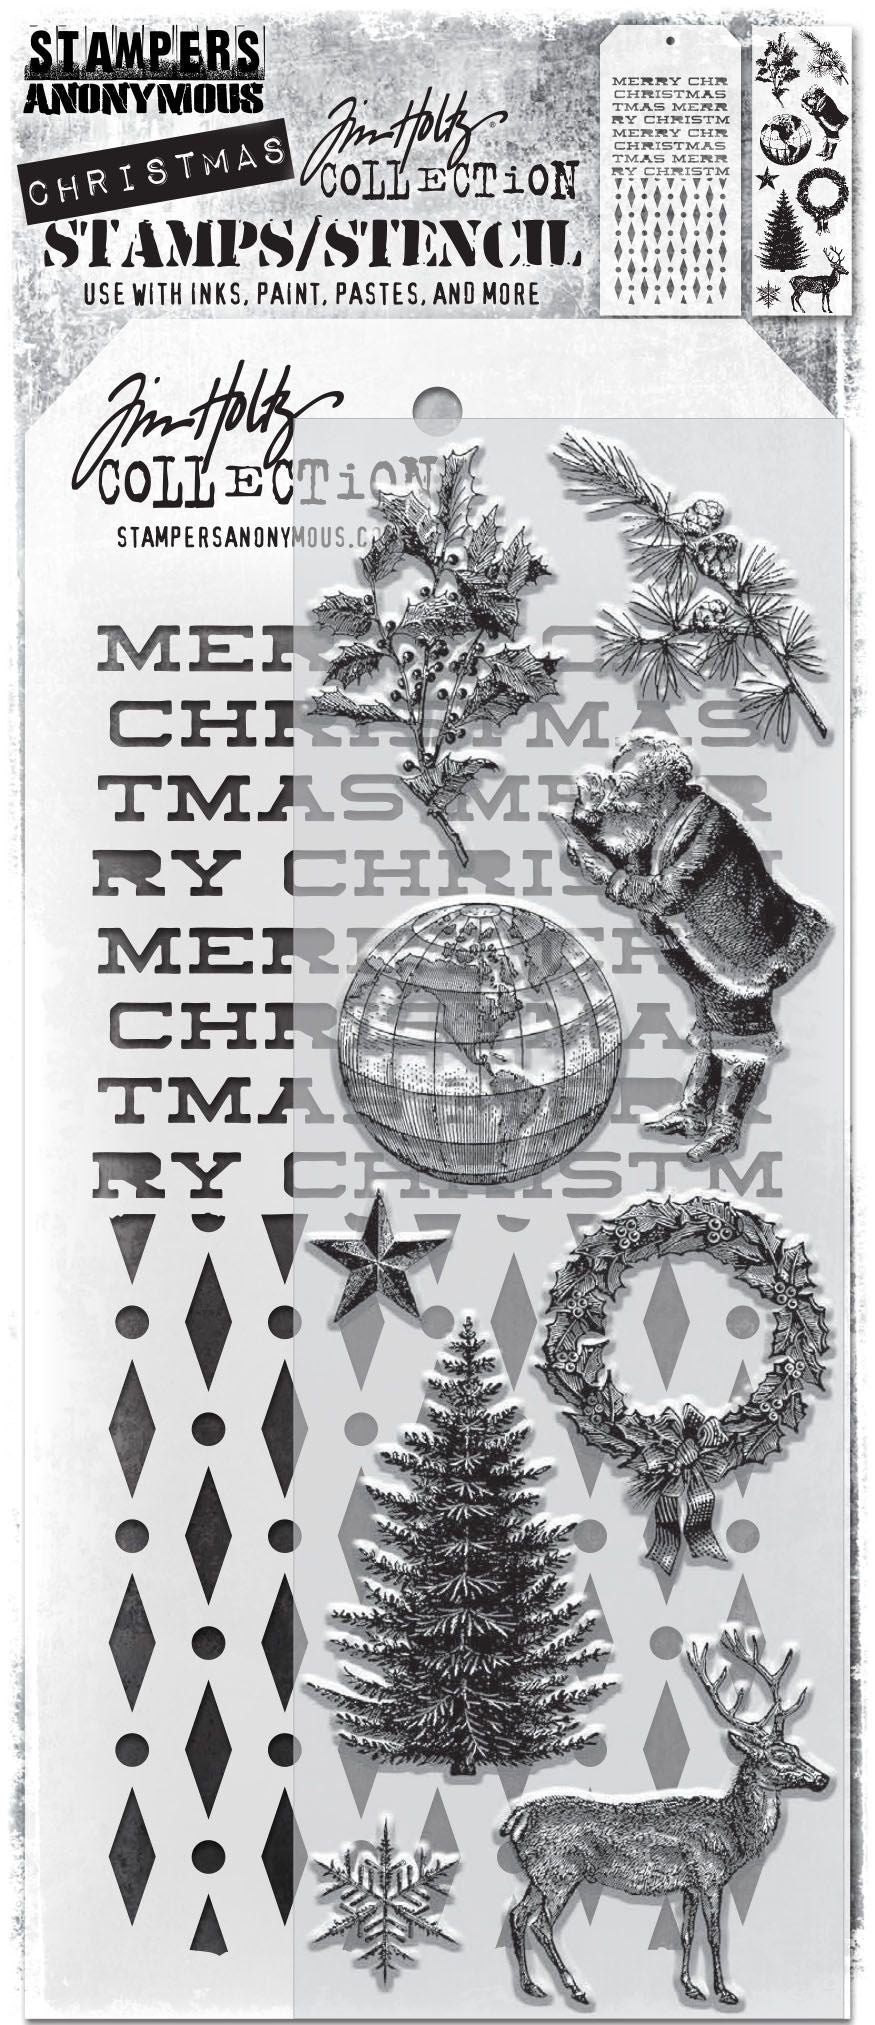 Tim Holtz 11 Holiday Sketchbook Clear Stamps & Stencil Set